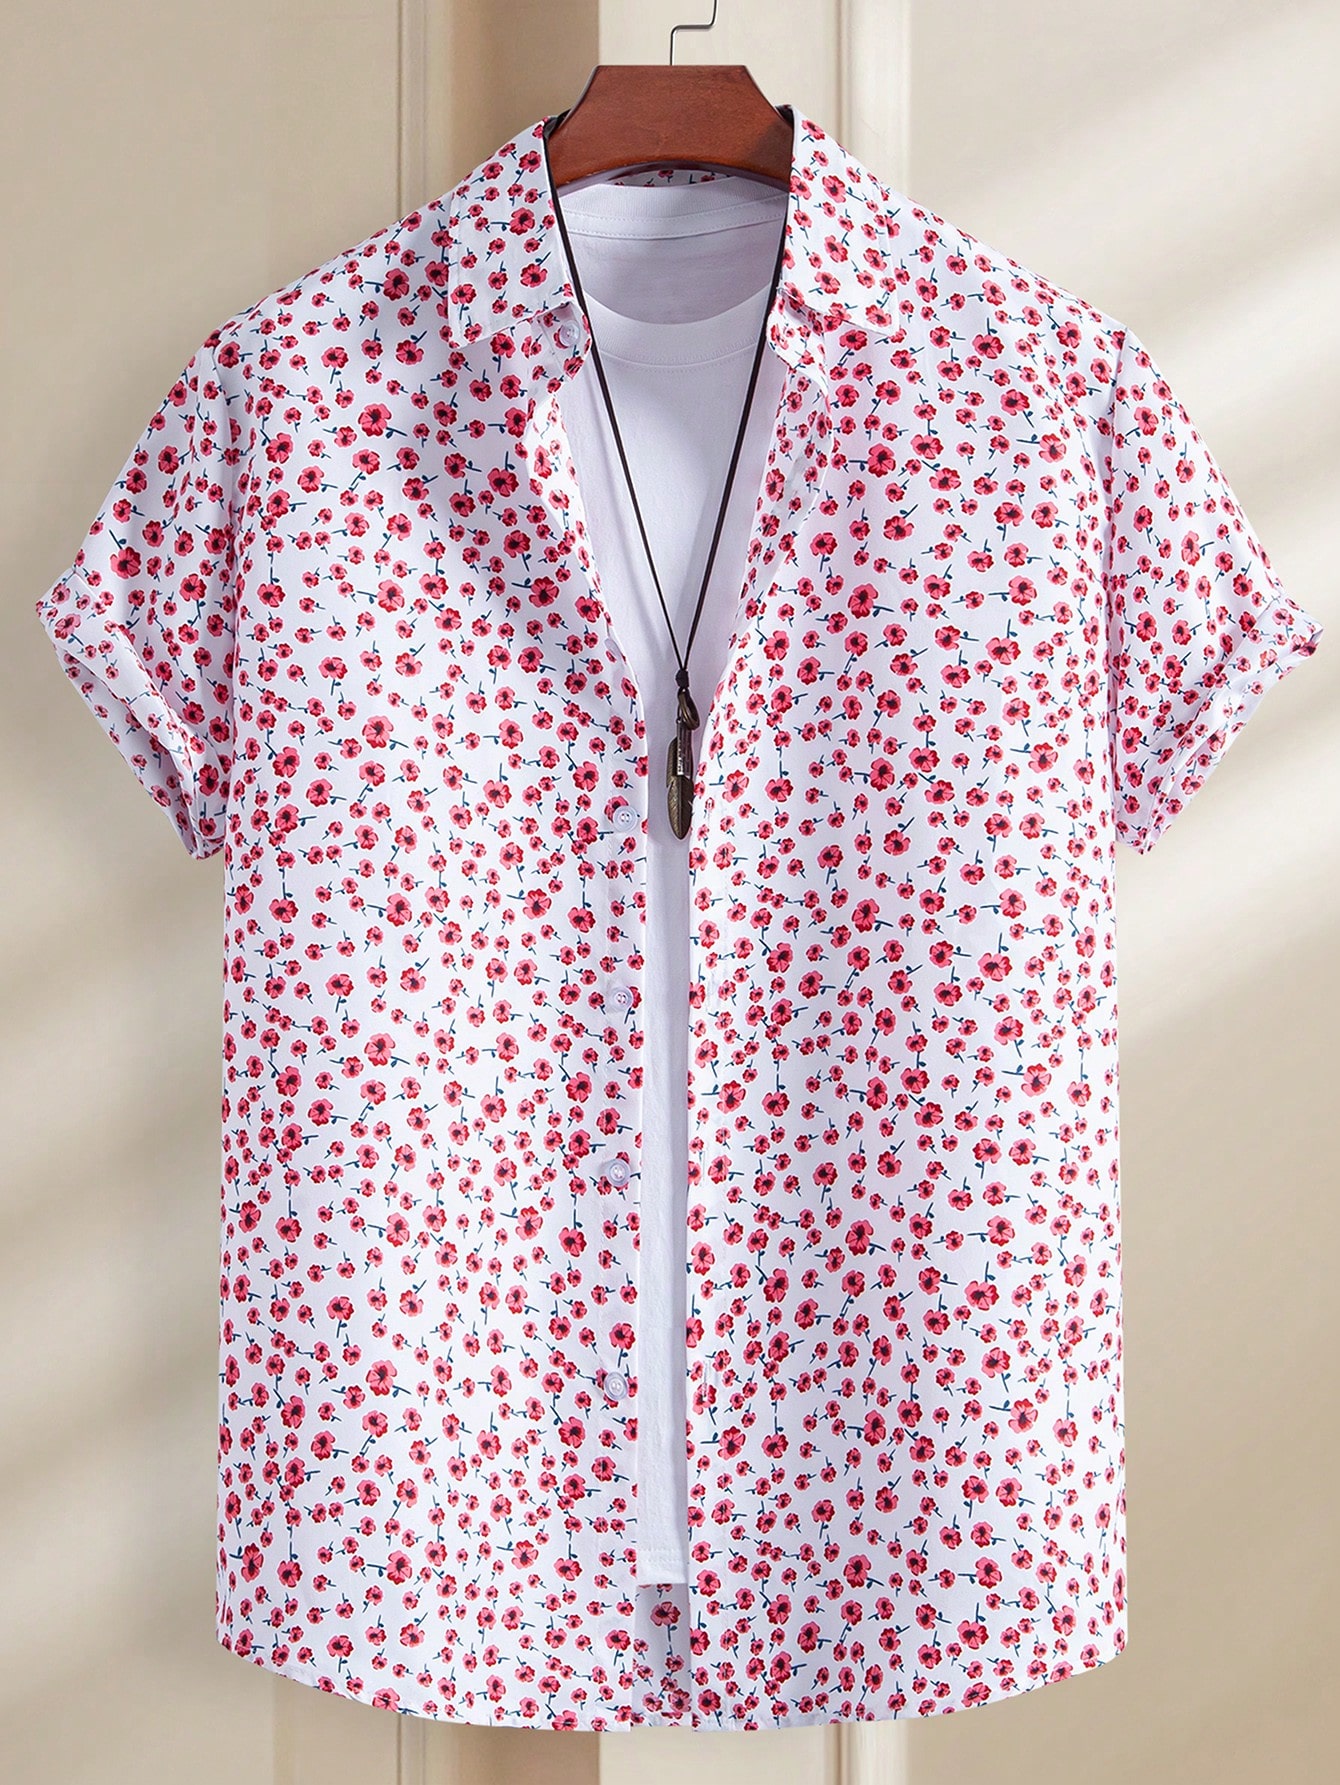 цена Мужская рубашка с коротким рукавом Manfinity Chillmode с цветочным принтом, красный